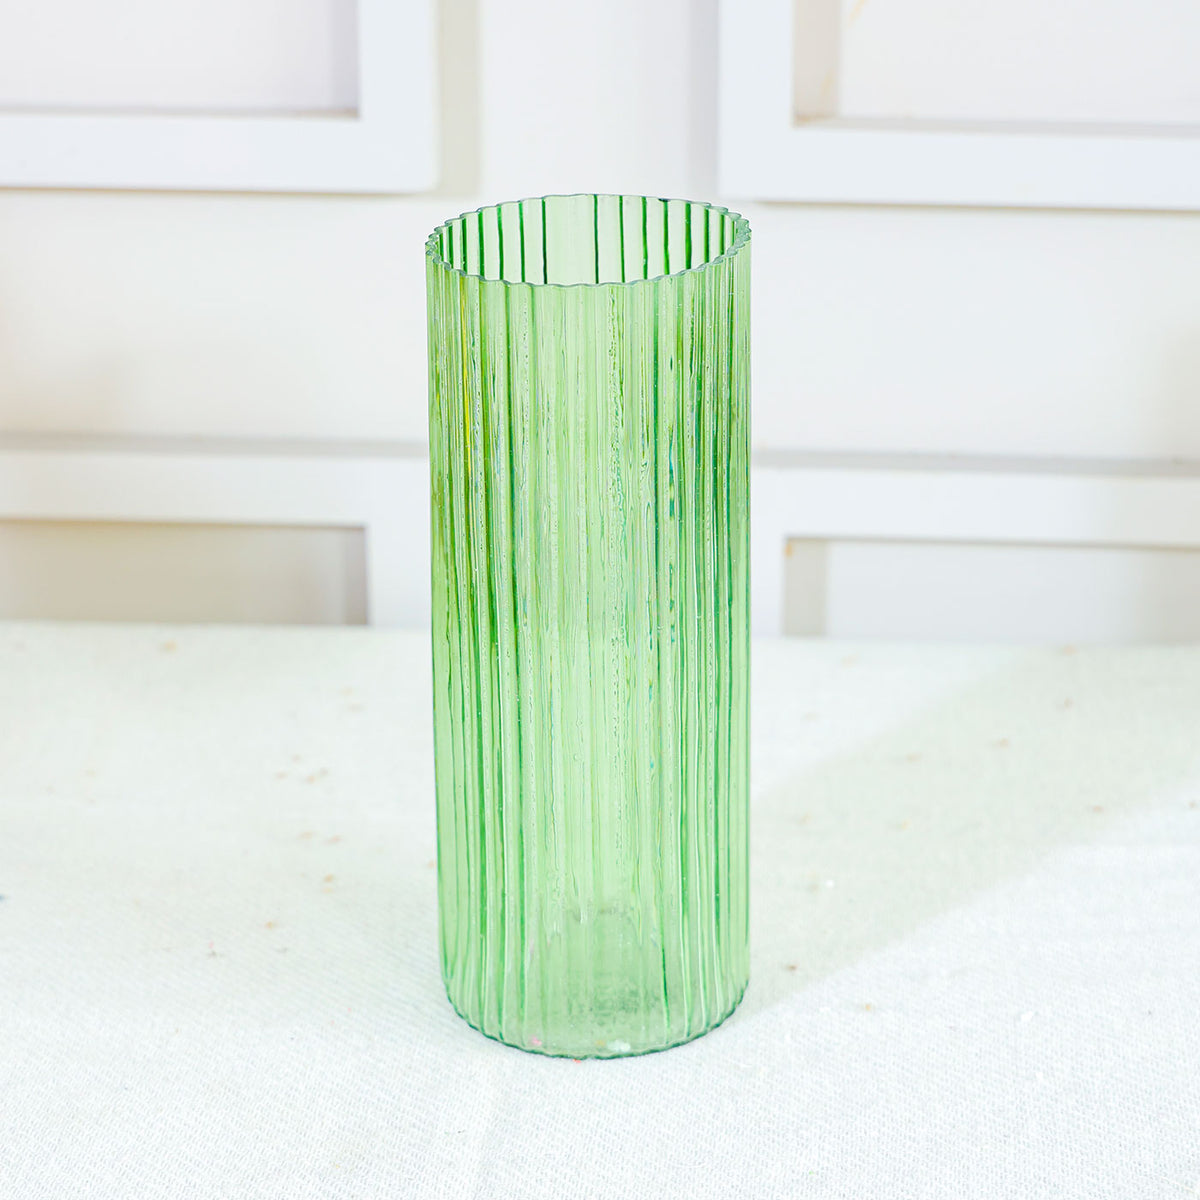 Green glow vase